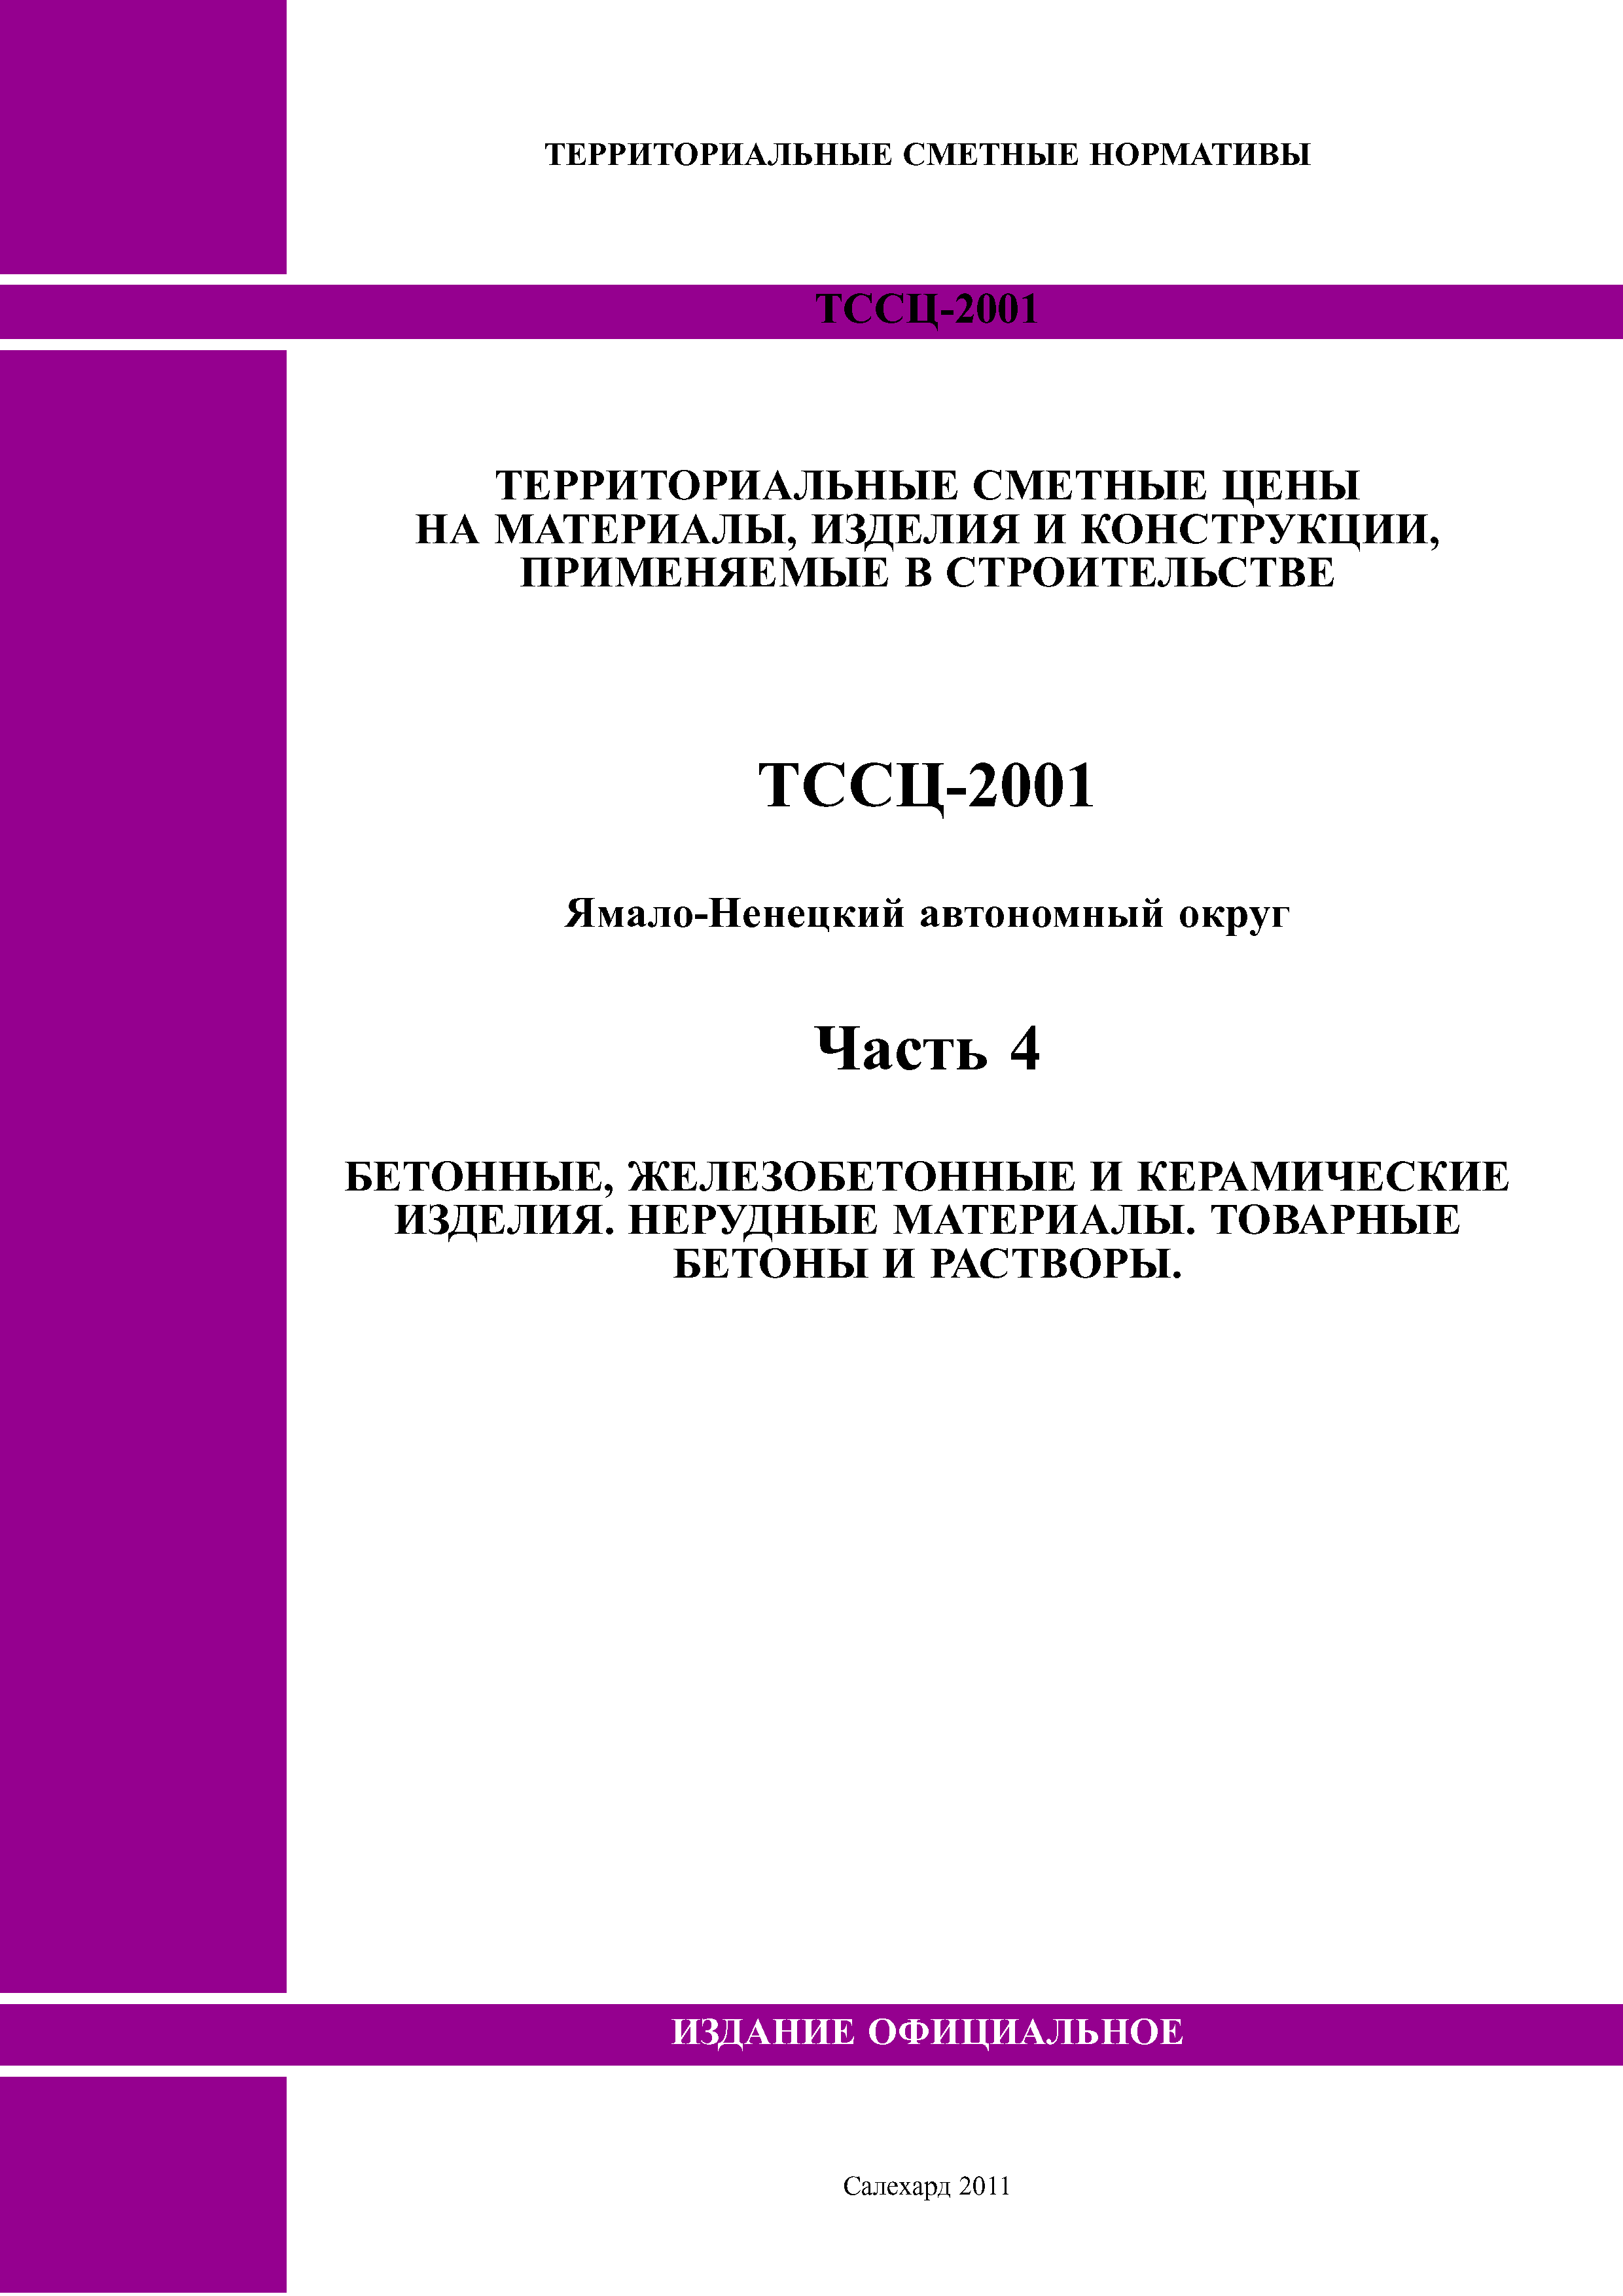 ТССЦ Ямало-Ненецкий автономный округ 04-2001